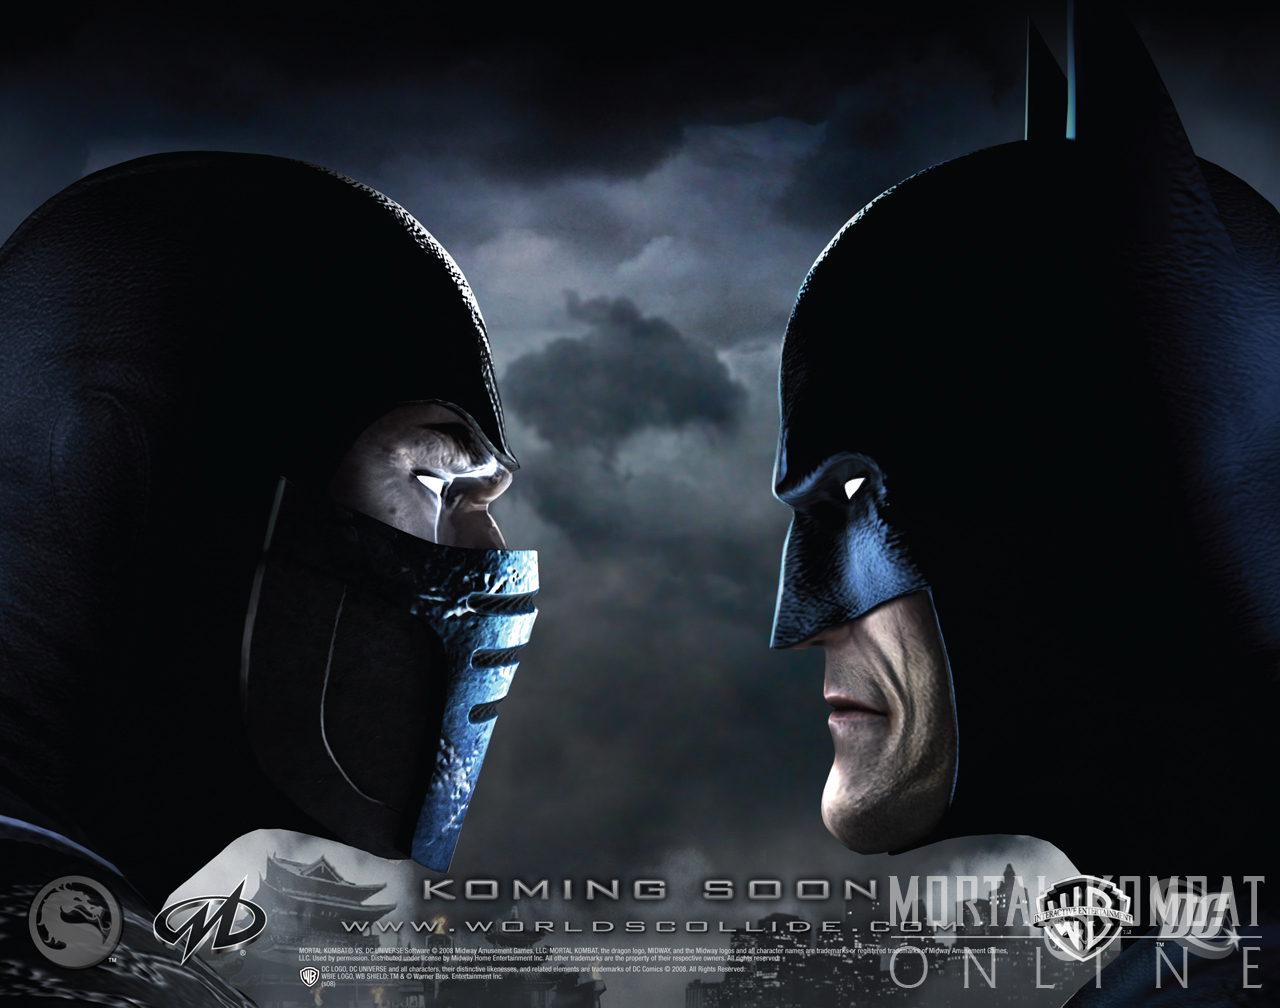 MKWarehouse: Mortal Kombat vs DC Universe: Shao Kahn